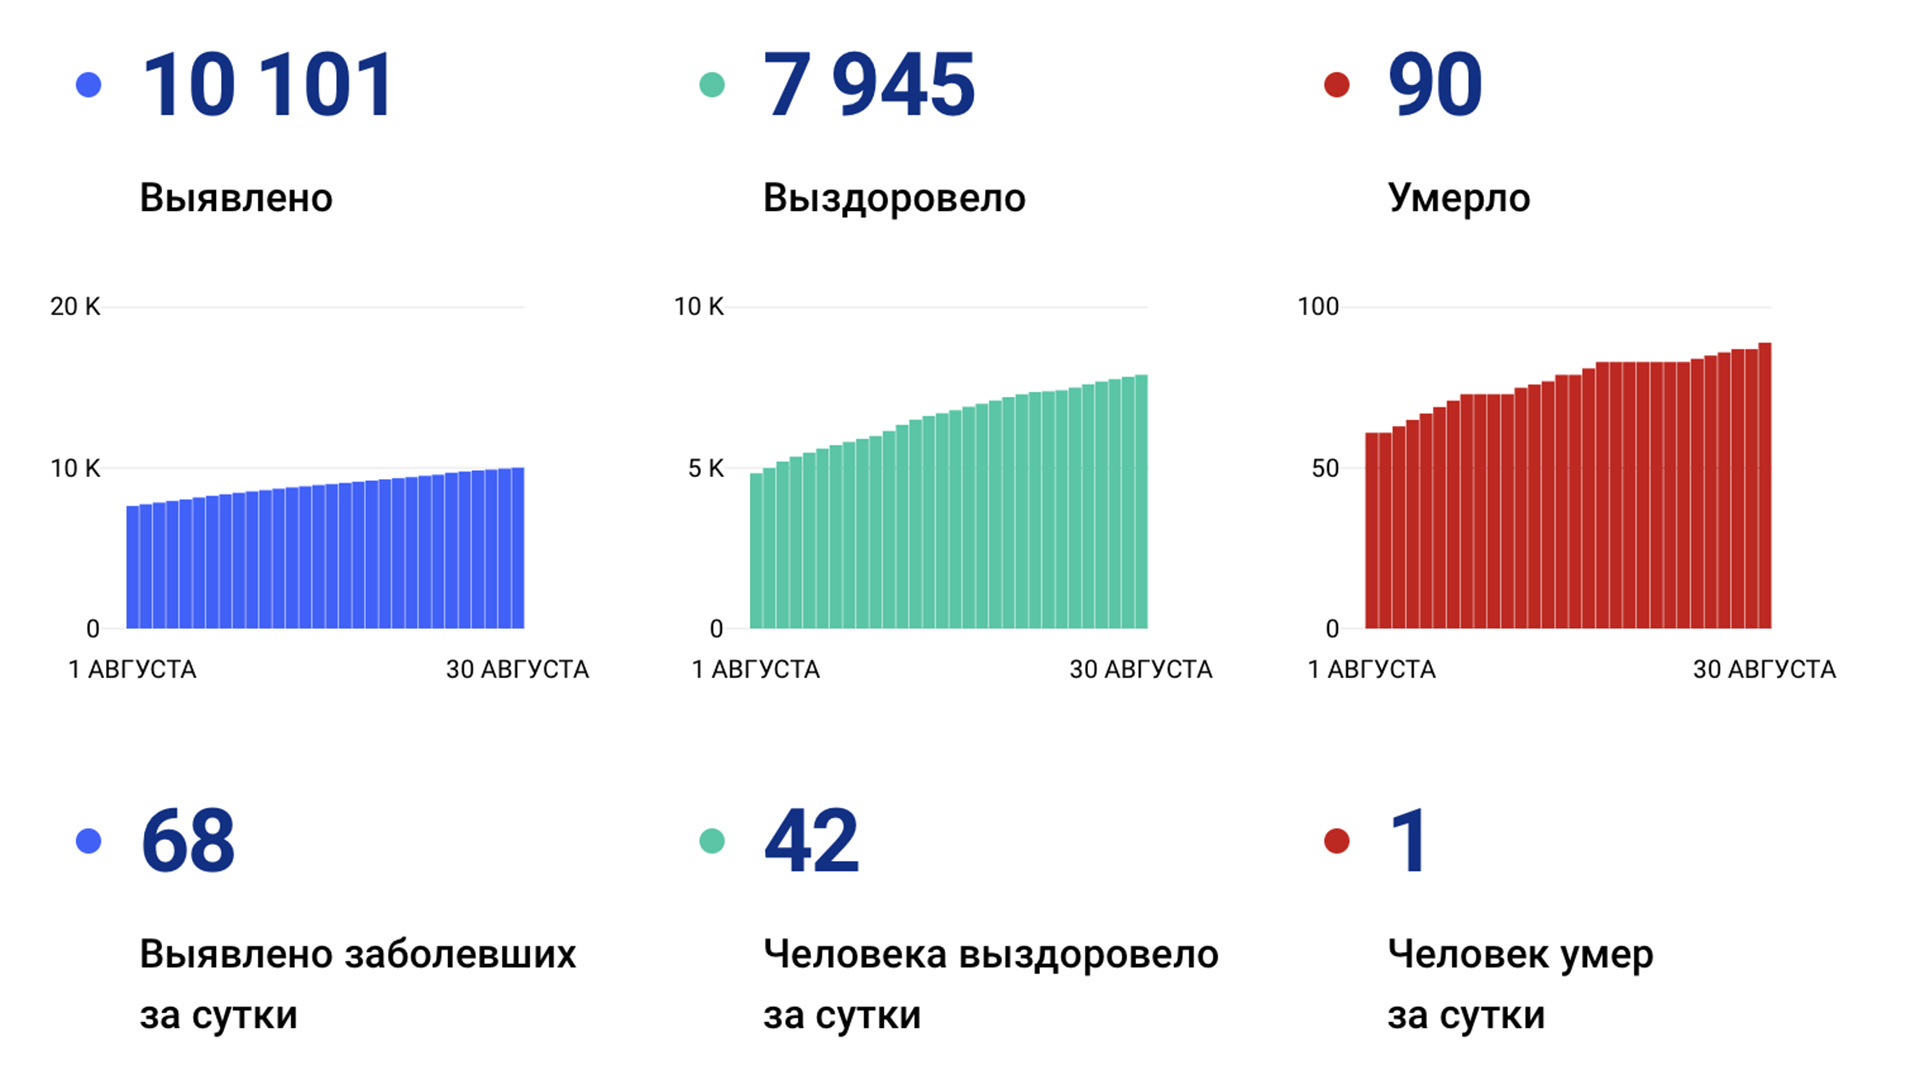 68 новых случаев коронавируса подтвердили за сутки в Хабаровском крае